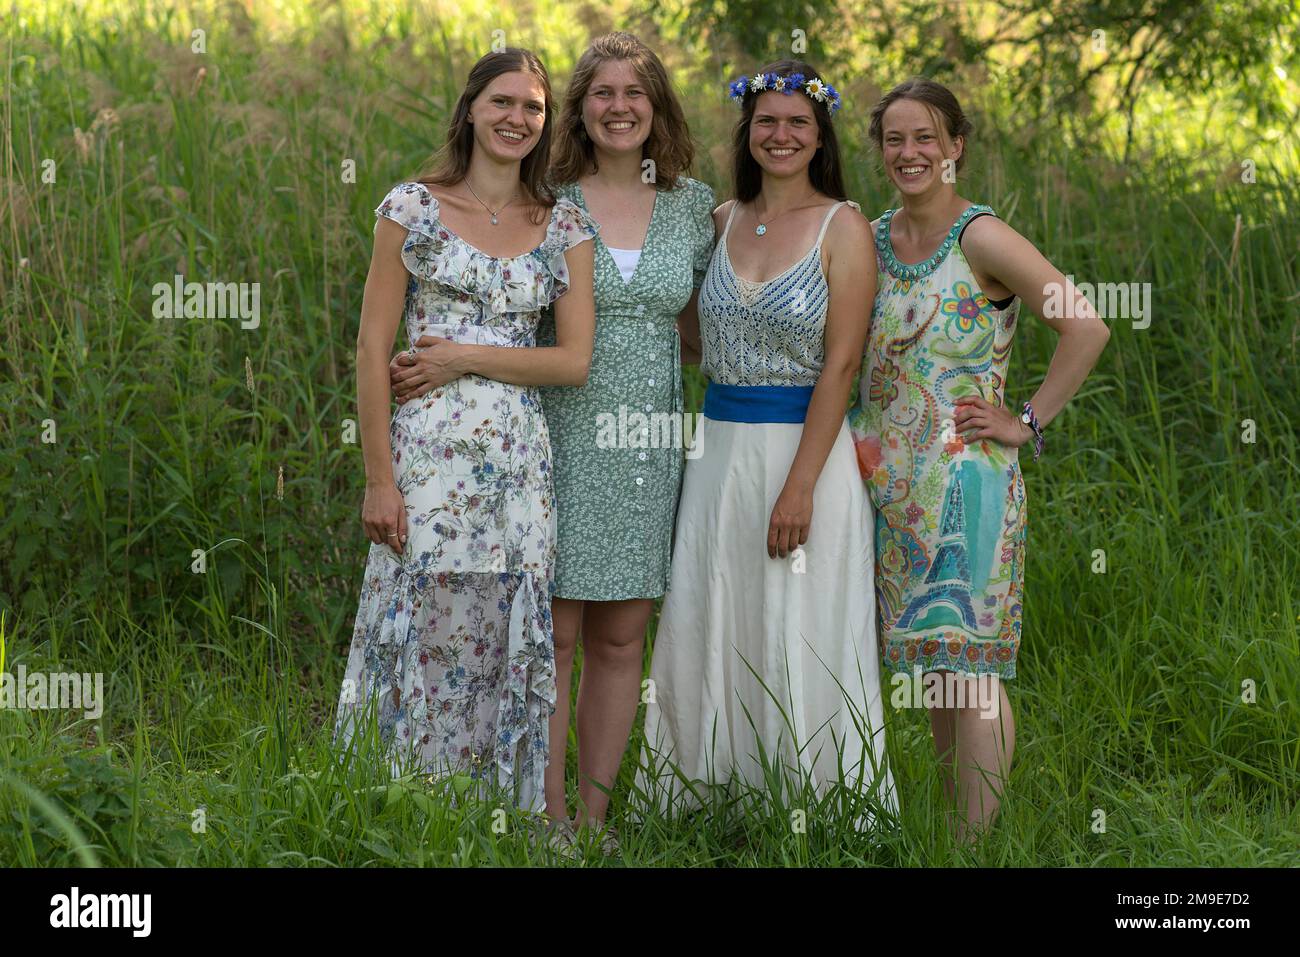 Quattro giovane donna ridente in abiti festosi, Meclemburgo-Pomerania occidentale, Germania Foto Stock